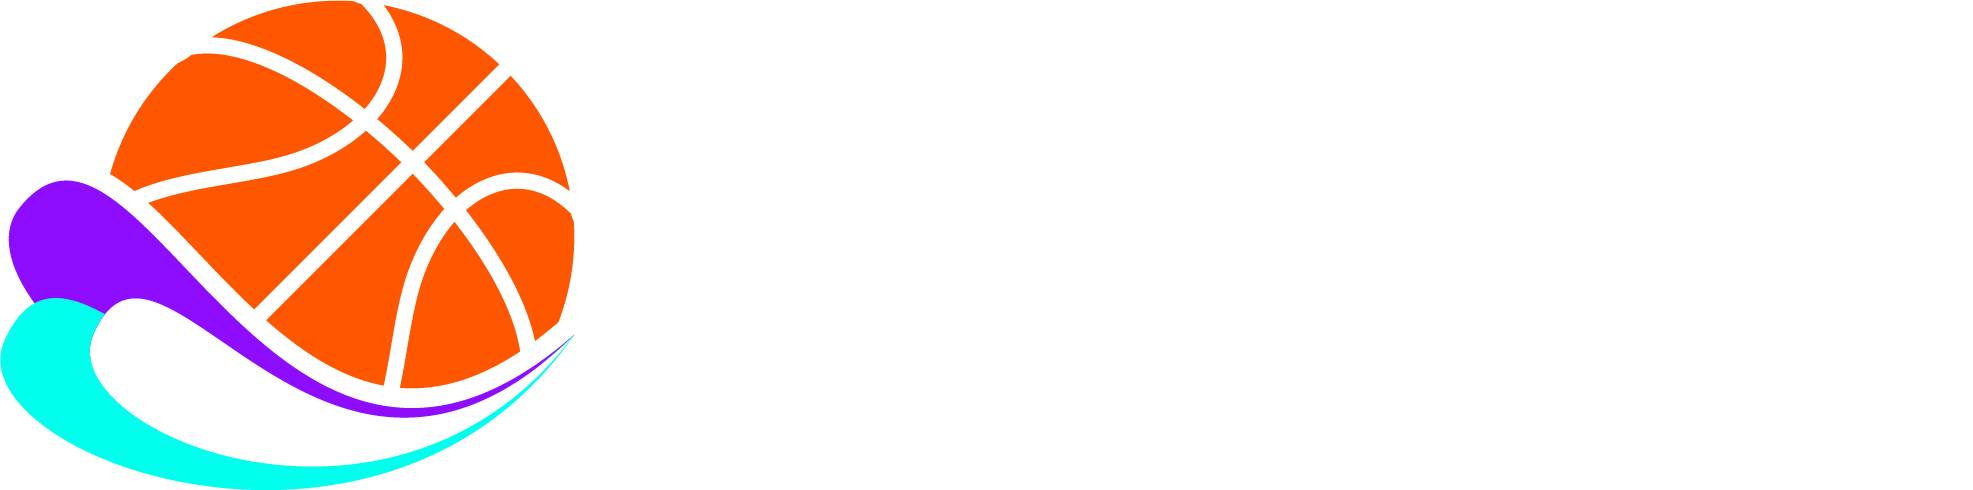 Basketball Universe